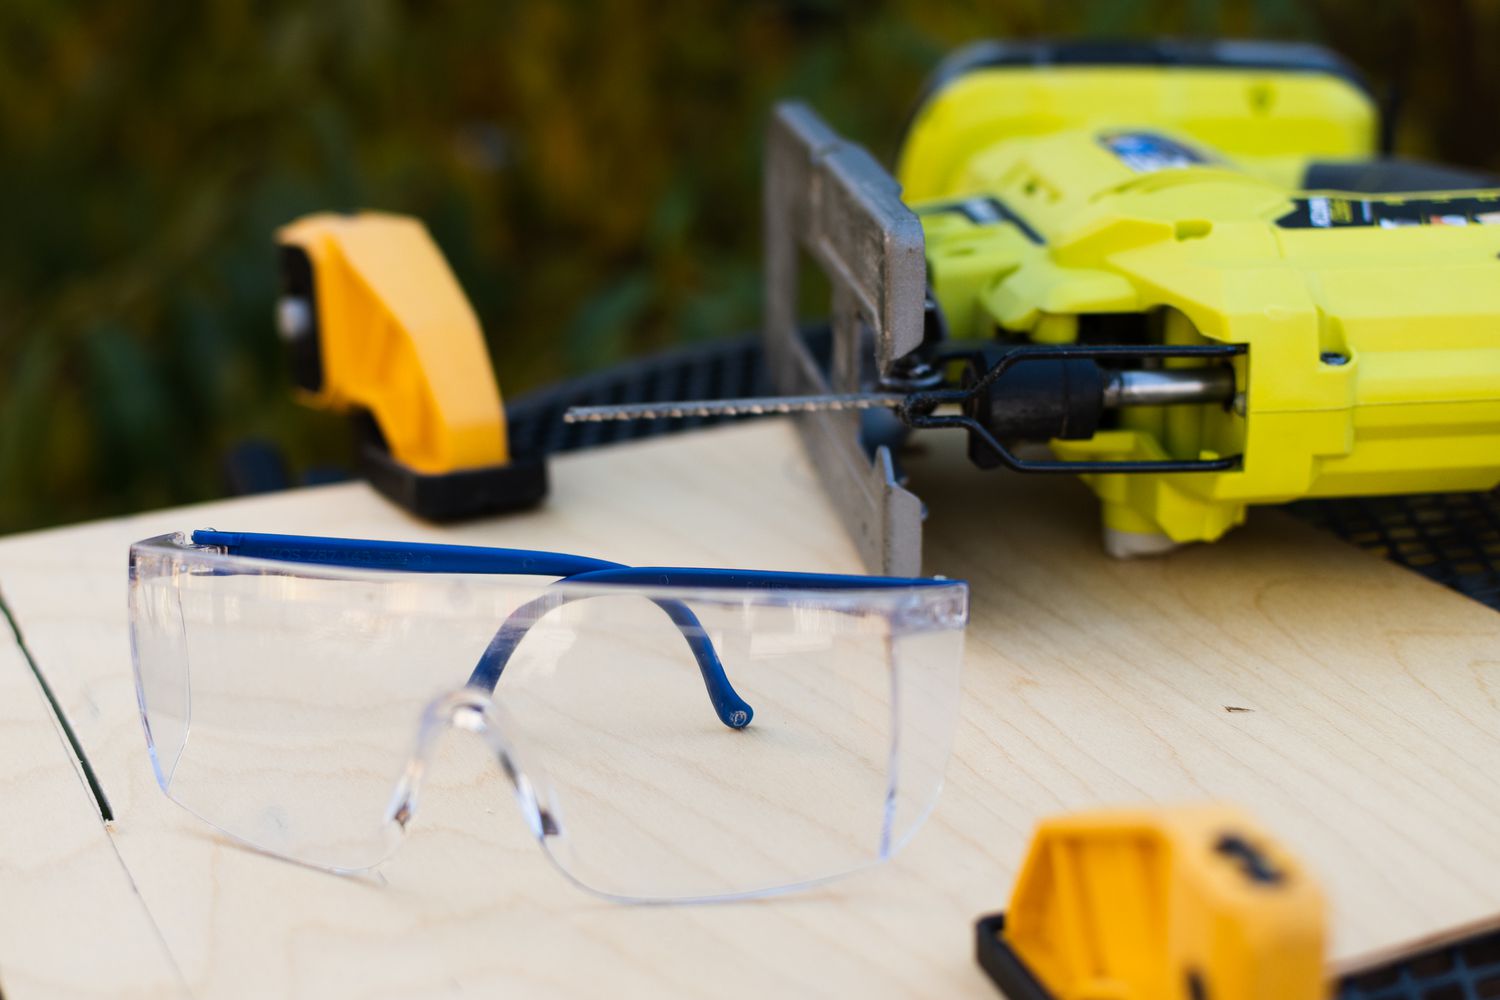 Óculos de segurança ao lado de uma serra tico-tico amarela em uma superfície de madeira em close-up